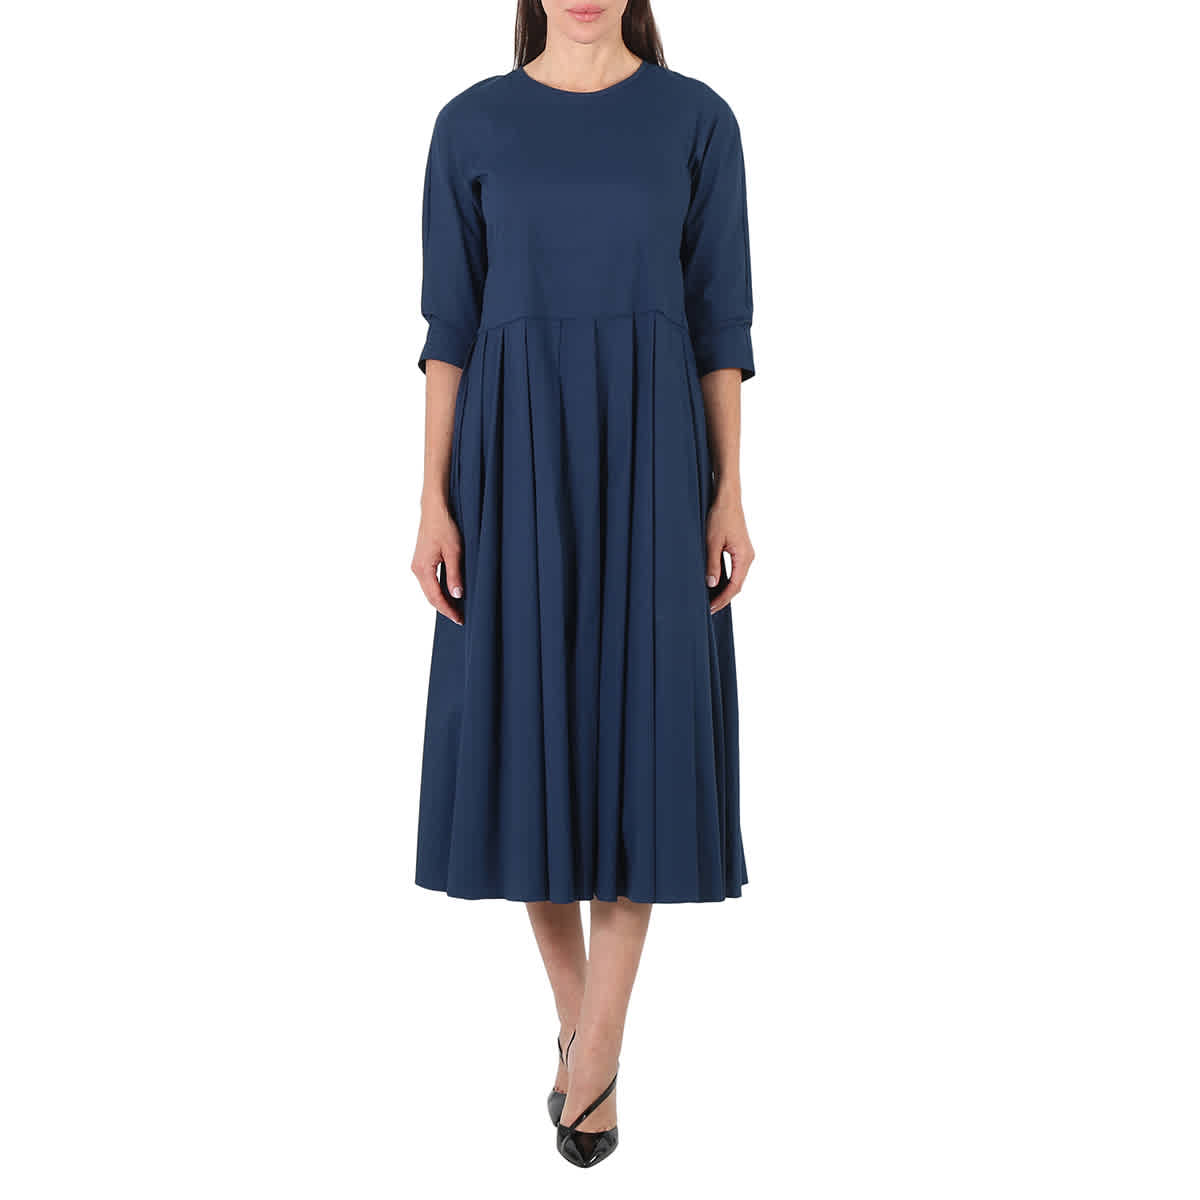 Lucia printed cotton midi dress in blue - S Max Mara